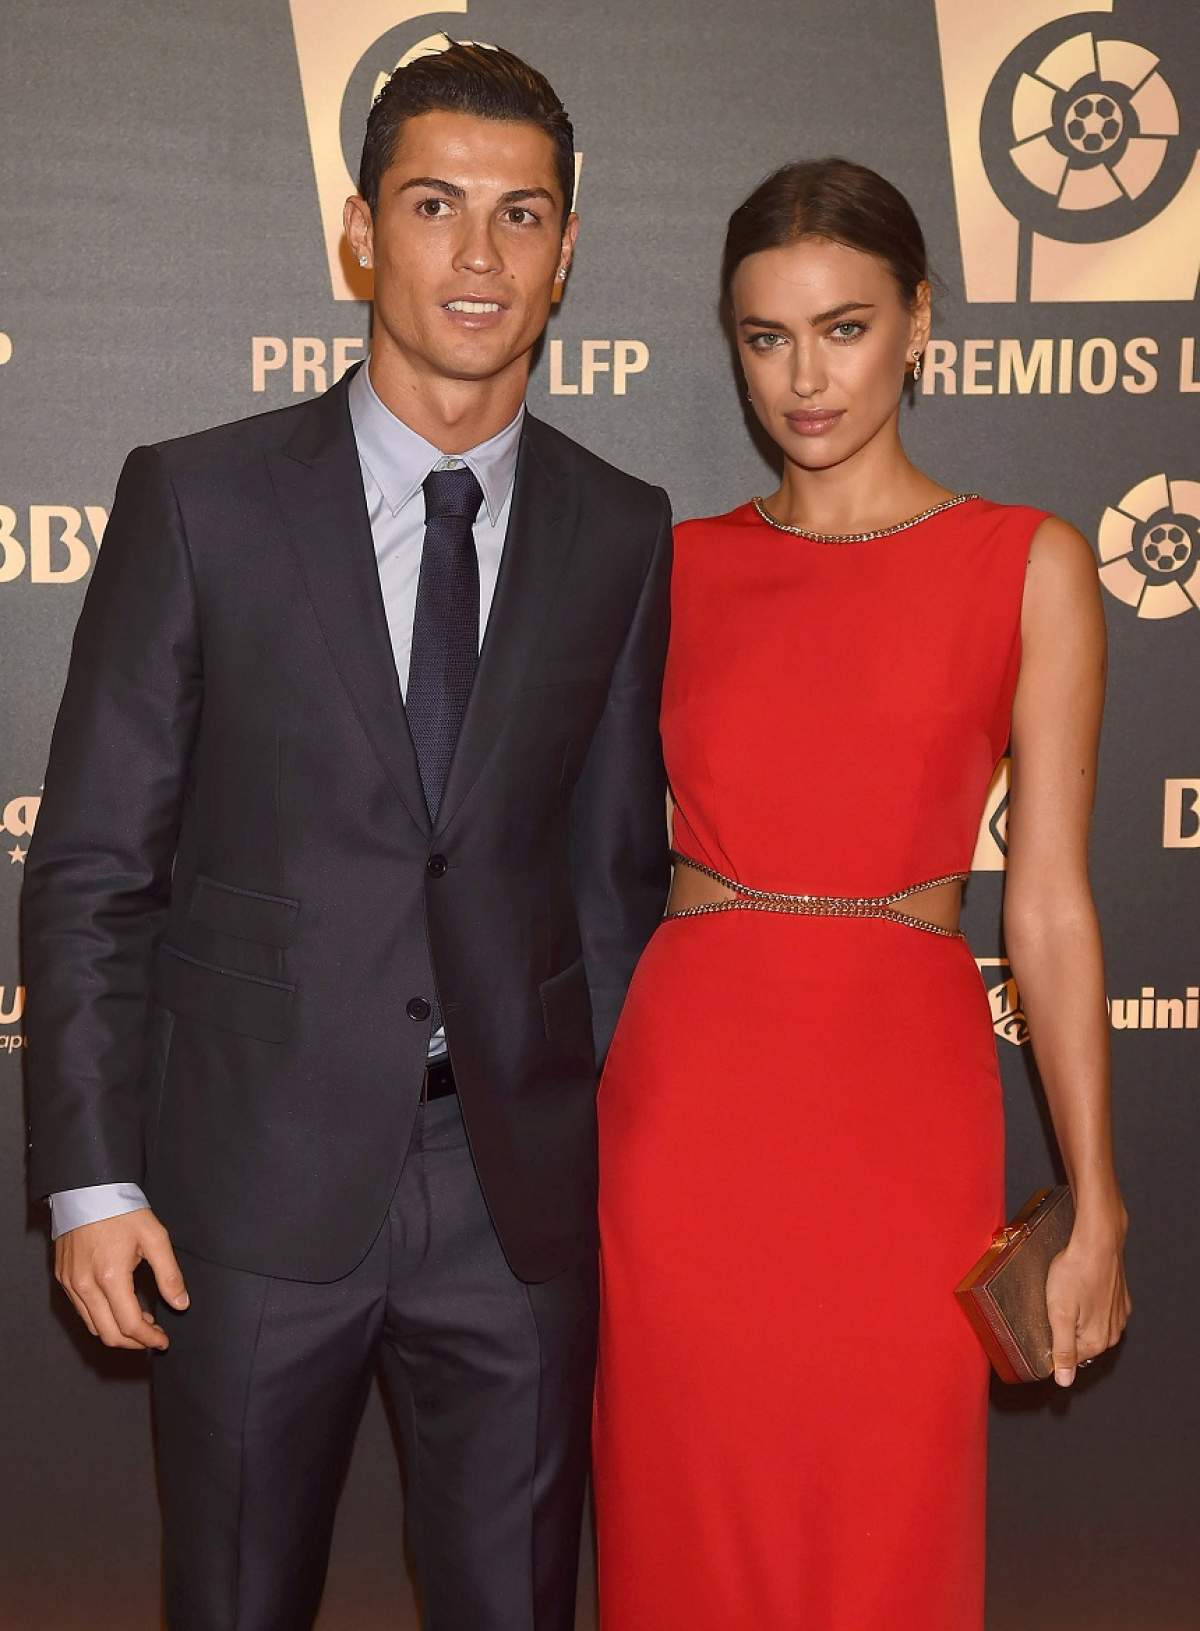 FOTO / Motivele incredibile ale separării lui Cristiano Ronaldo şi ale fotomodelui Irina Shayk!